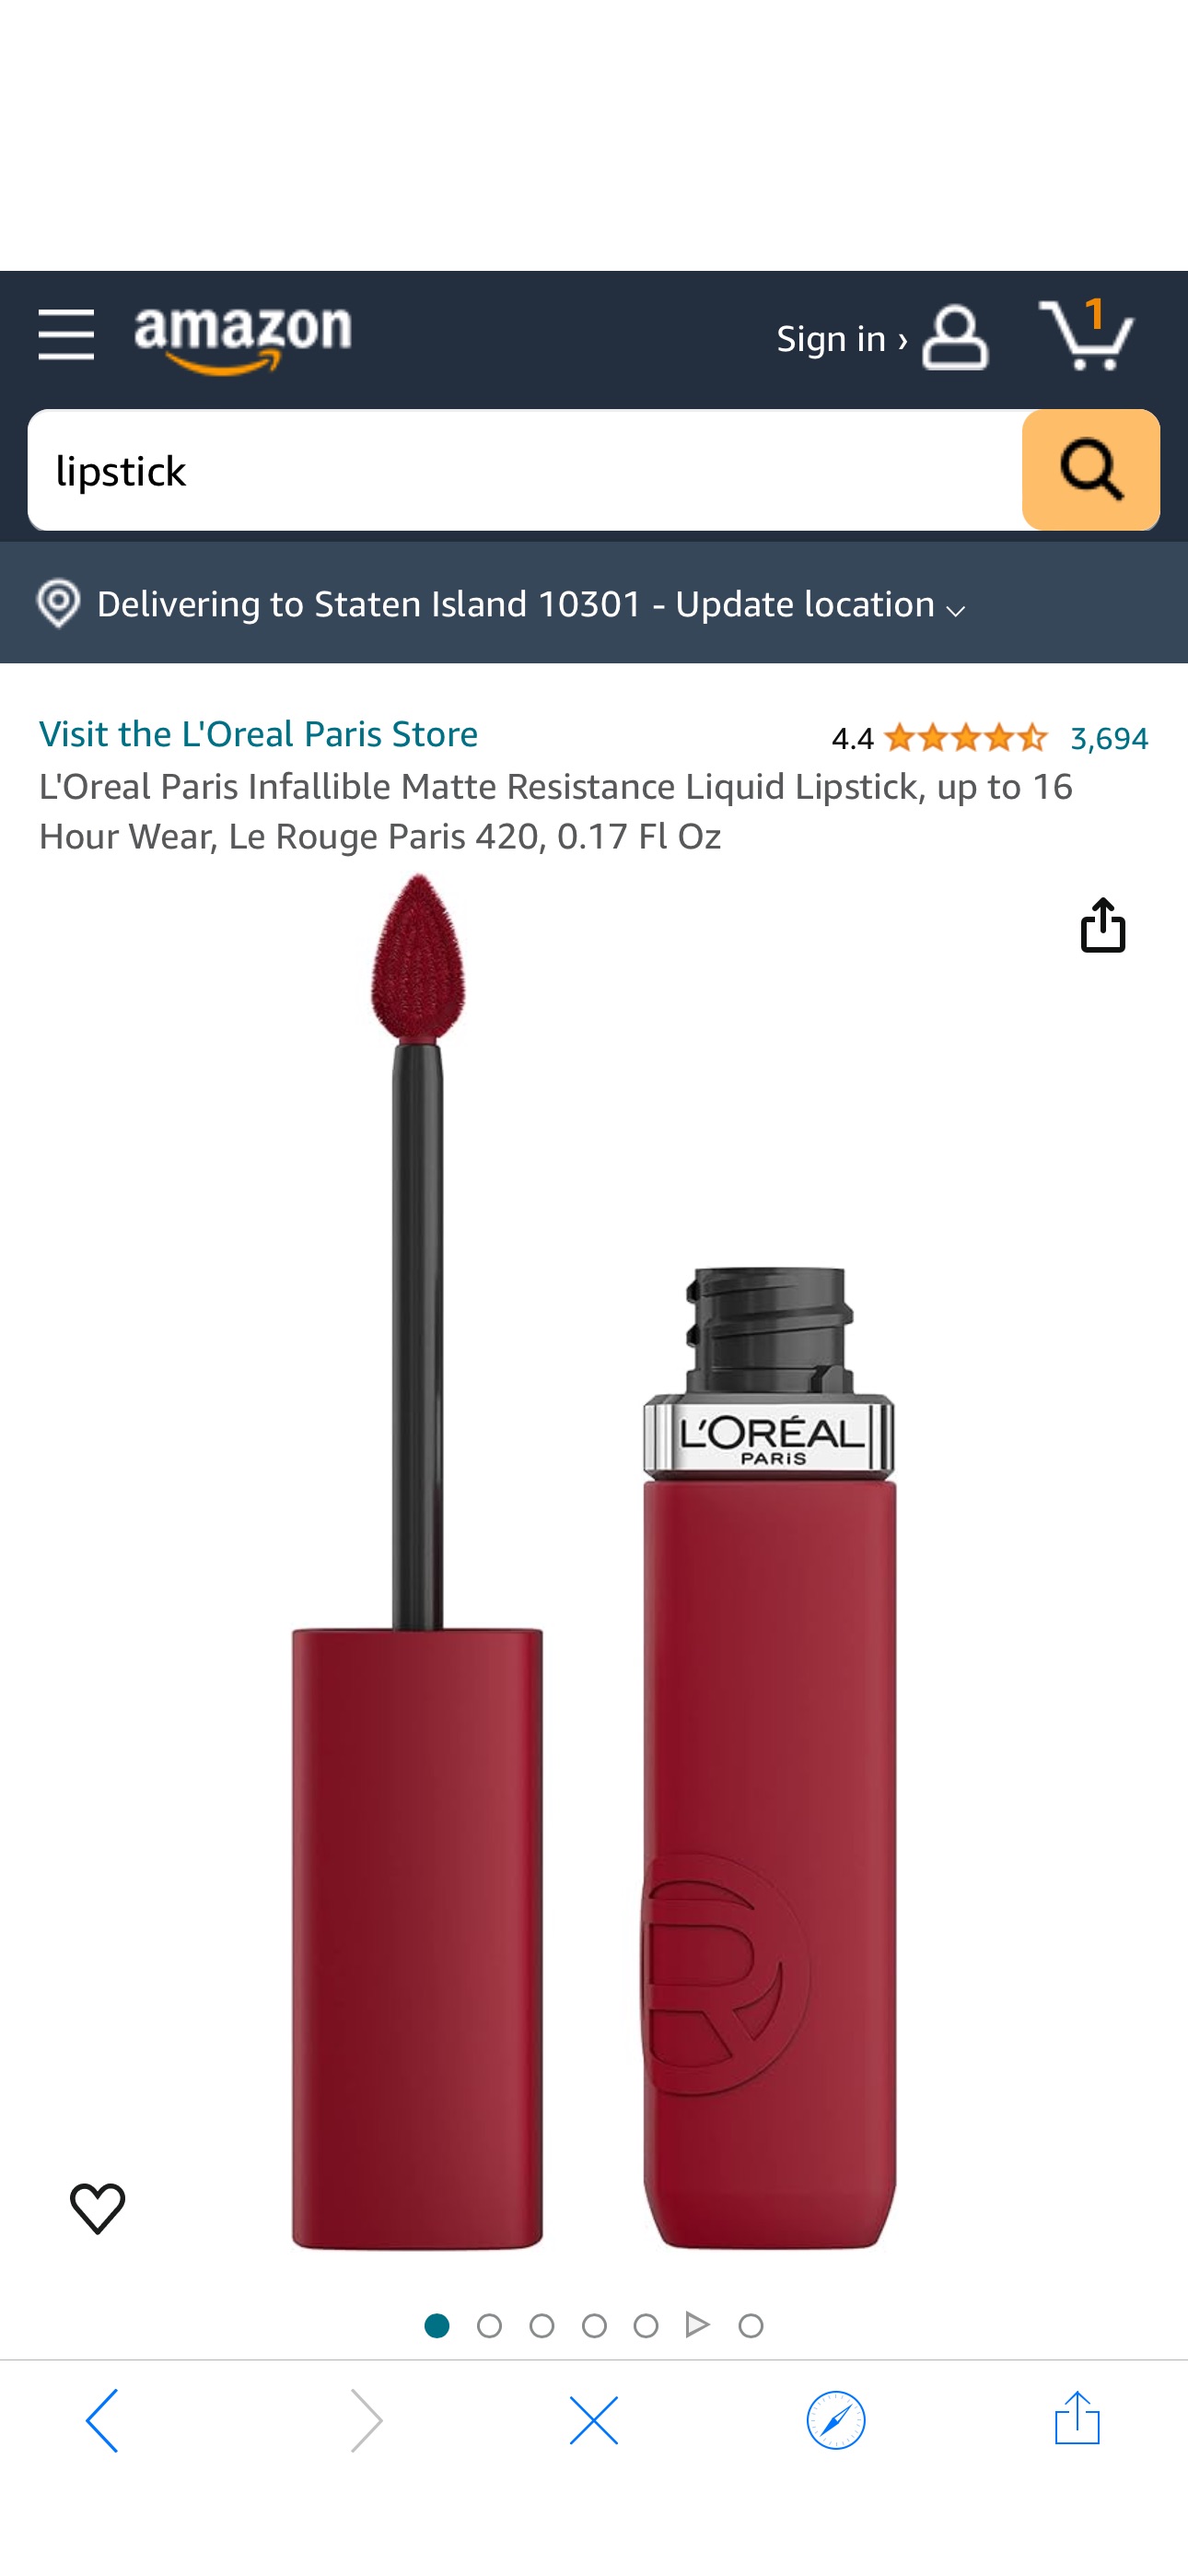 Amazon.com : L'Oreal Paris Infallible Matte Resistance Liquid Lipstick, up to 16 Hour Wear, Le Rouge Paris 420, 0.17 Fl Oz : Beauty & Personal Care